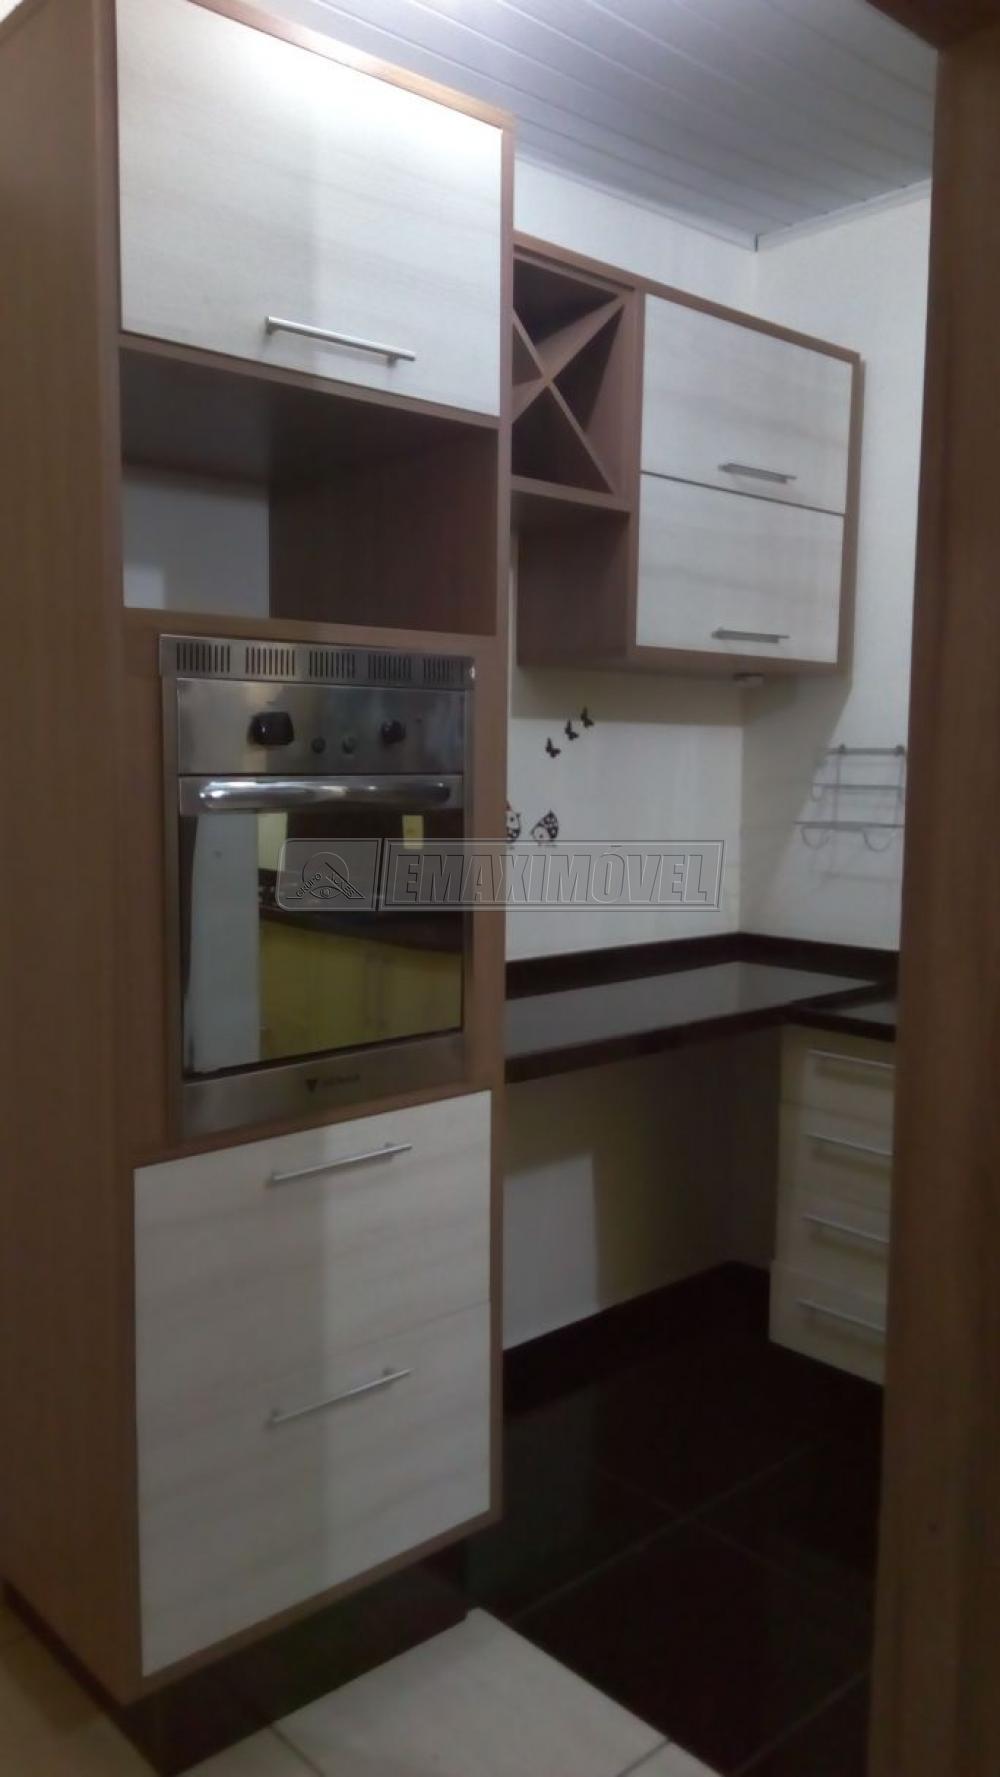 Comprar Casa / em Bairros em Sorocaba R$ 230.000,00 - Foto 3